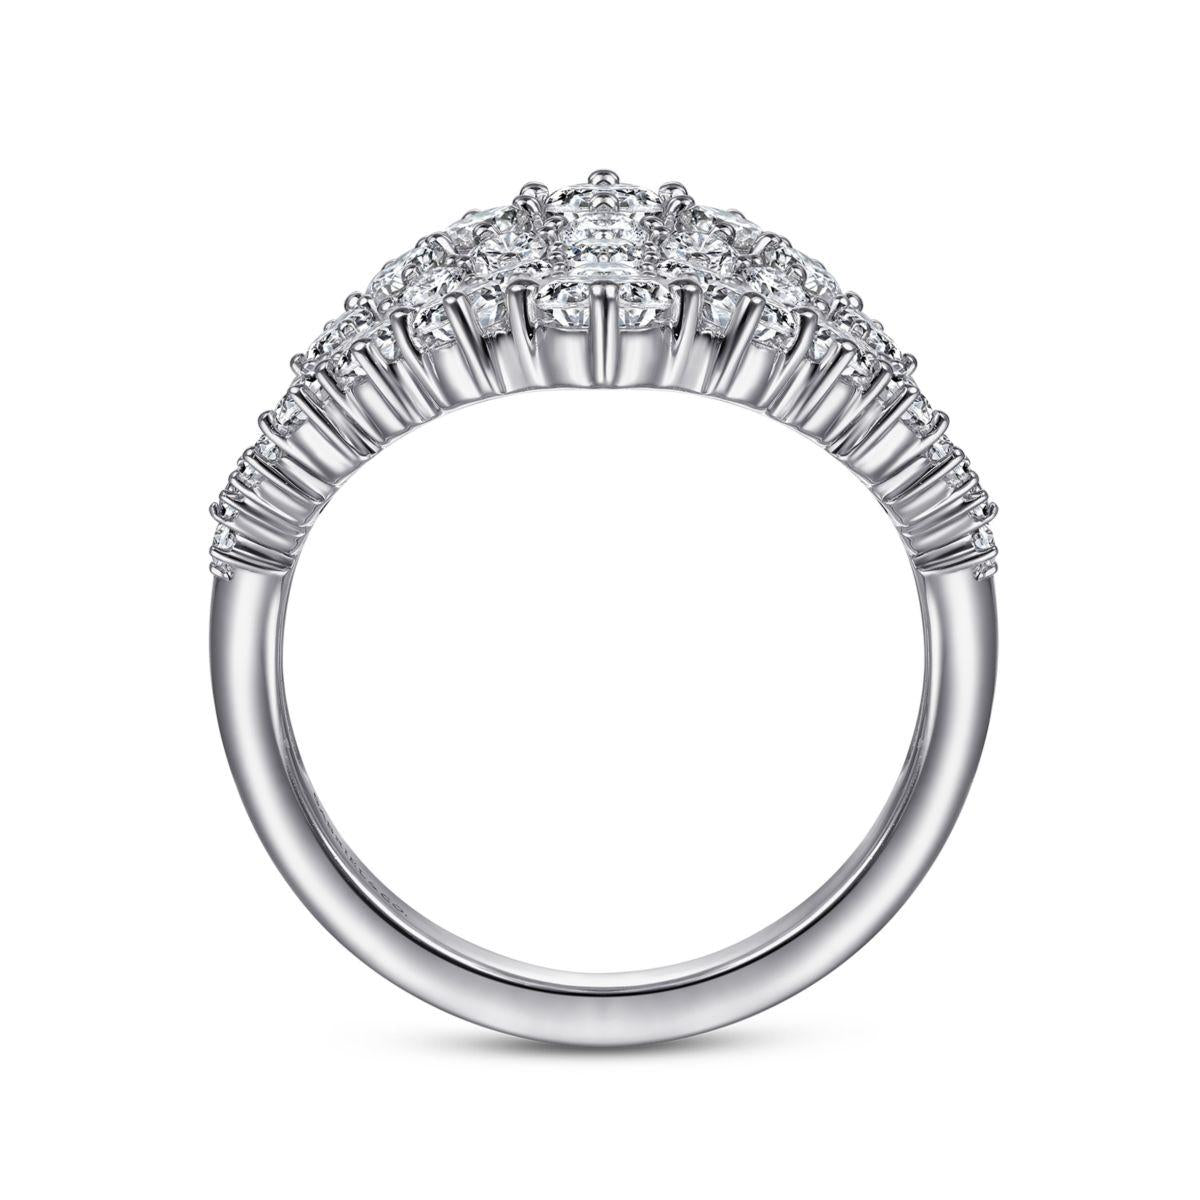 18K Rose & White Gold Polish Diamond Ring For Women - 235-DR1133